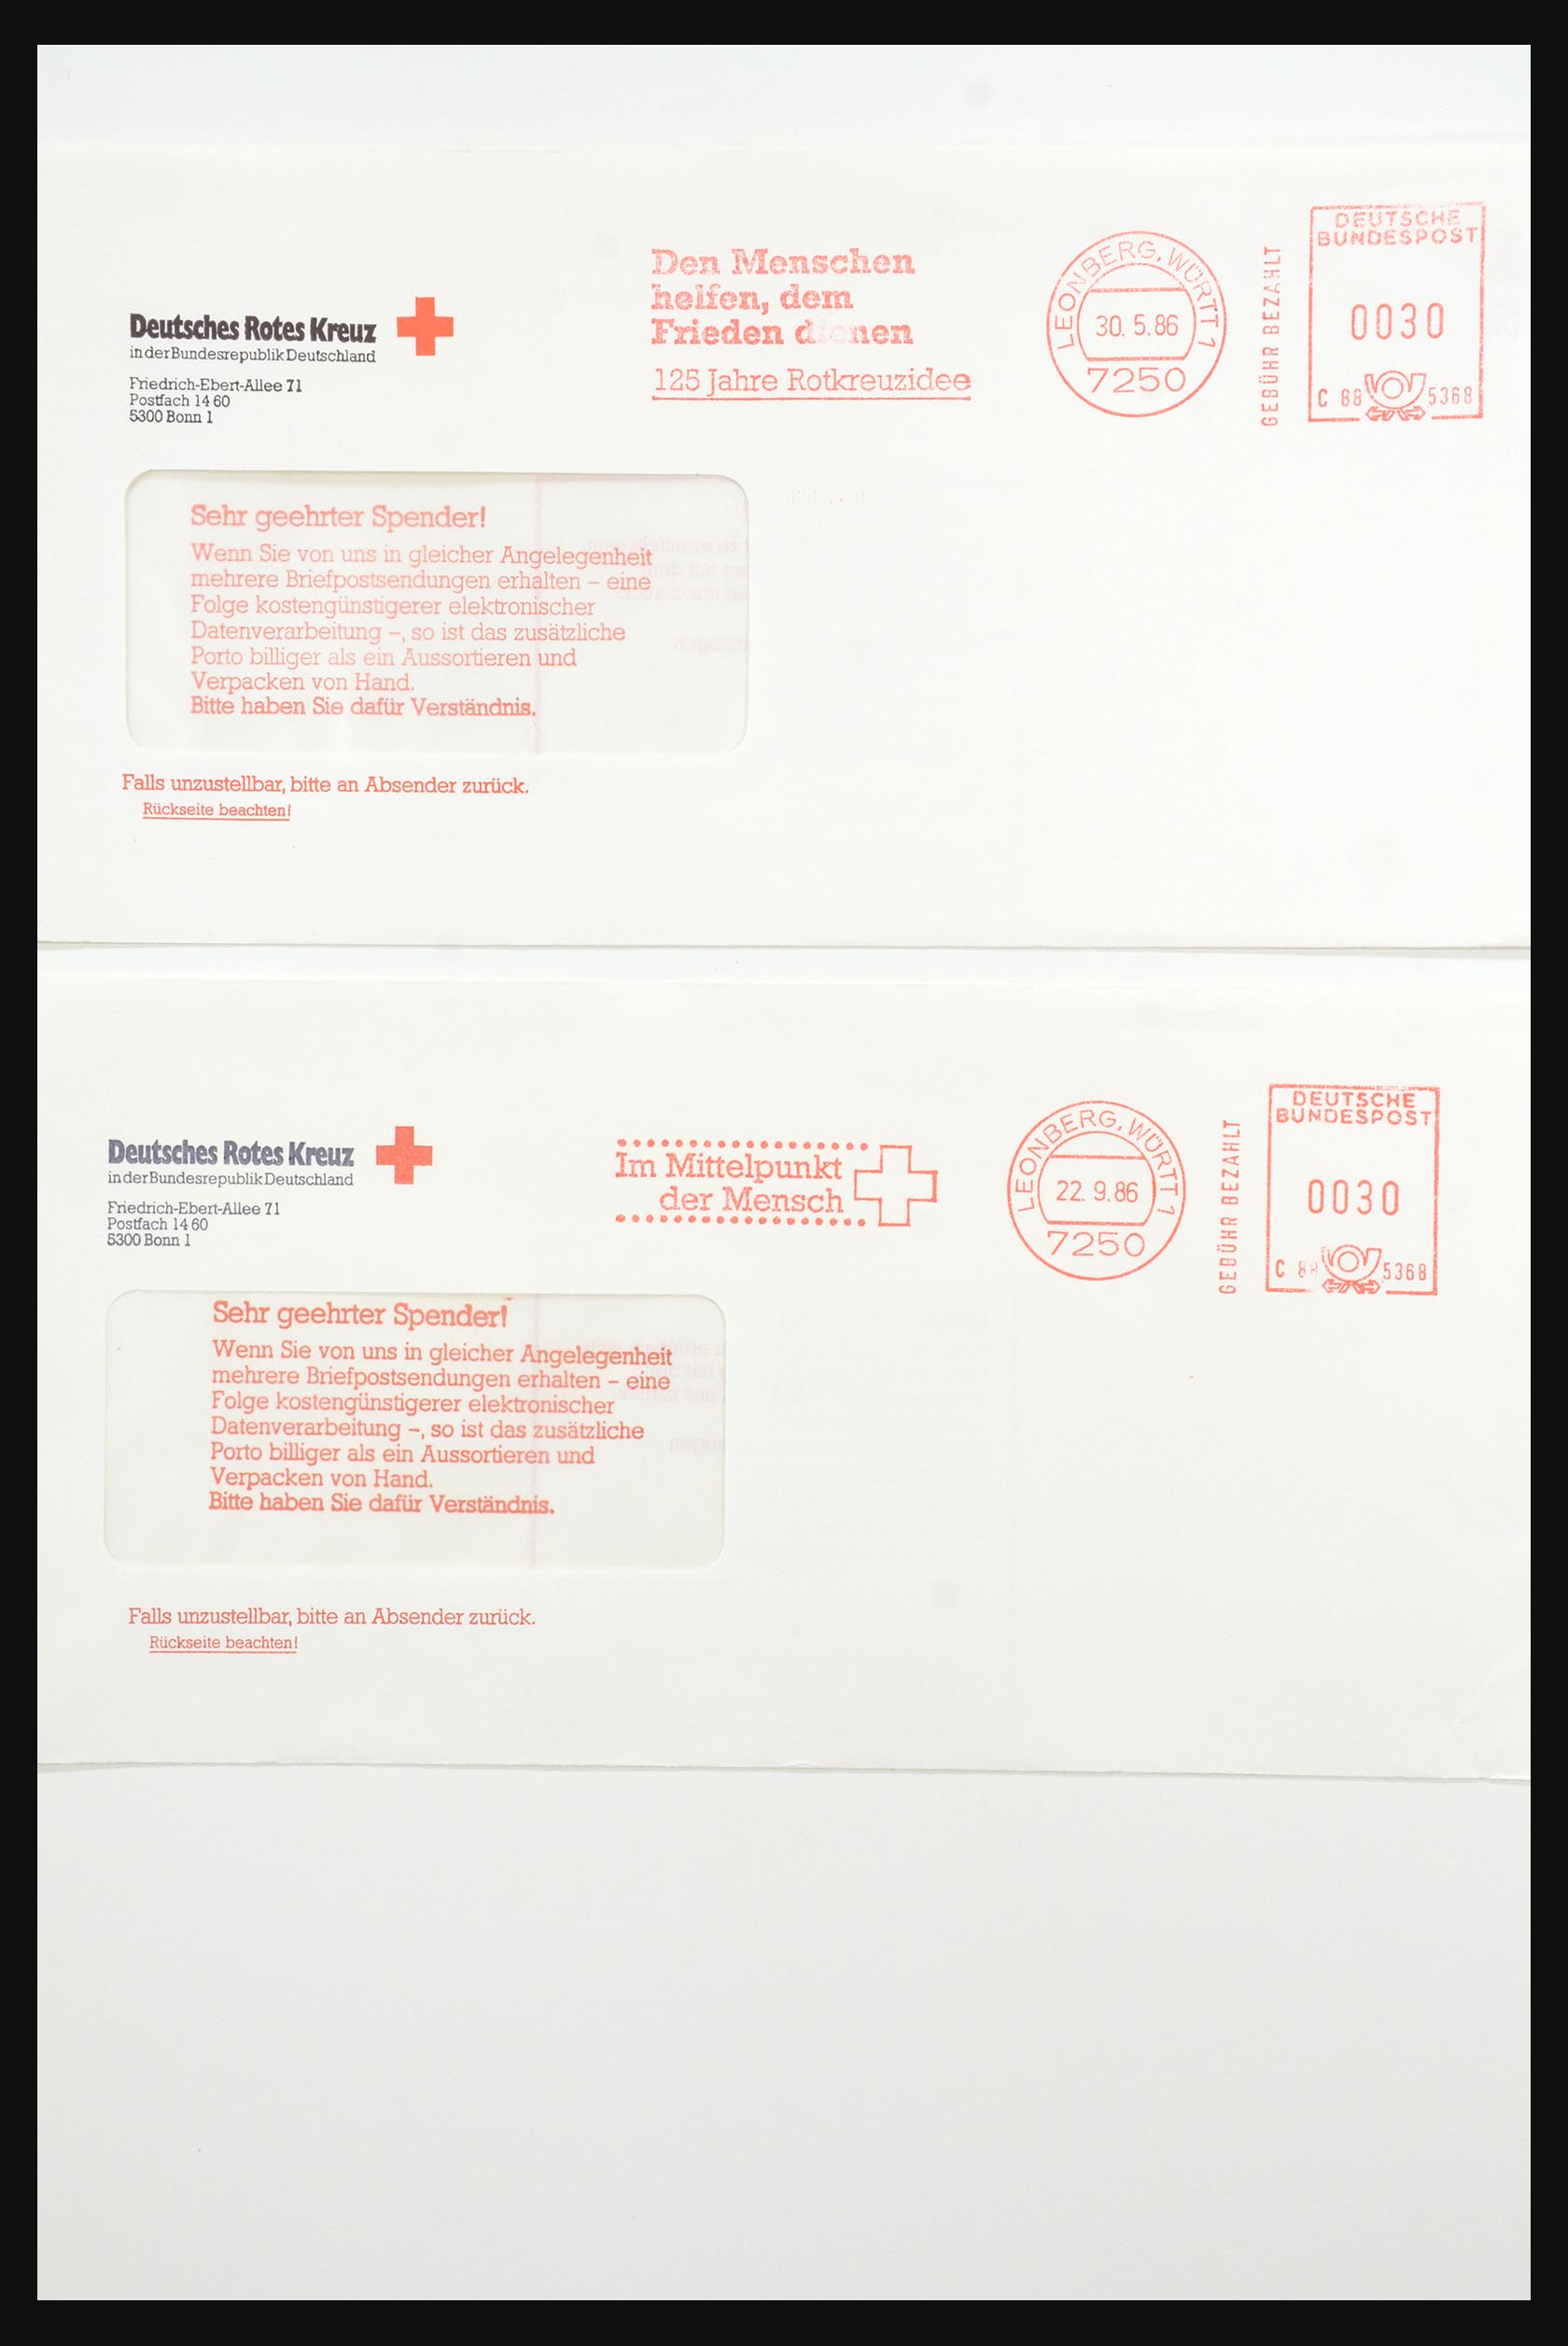 31365 1083 - 31365 Rode kruis brieven 1905-1975.